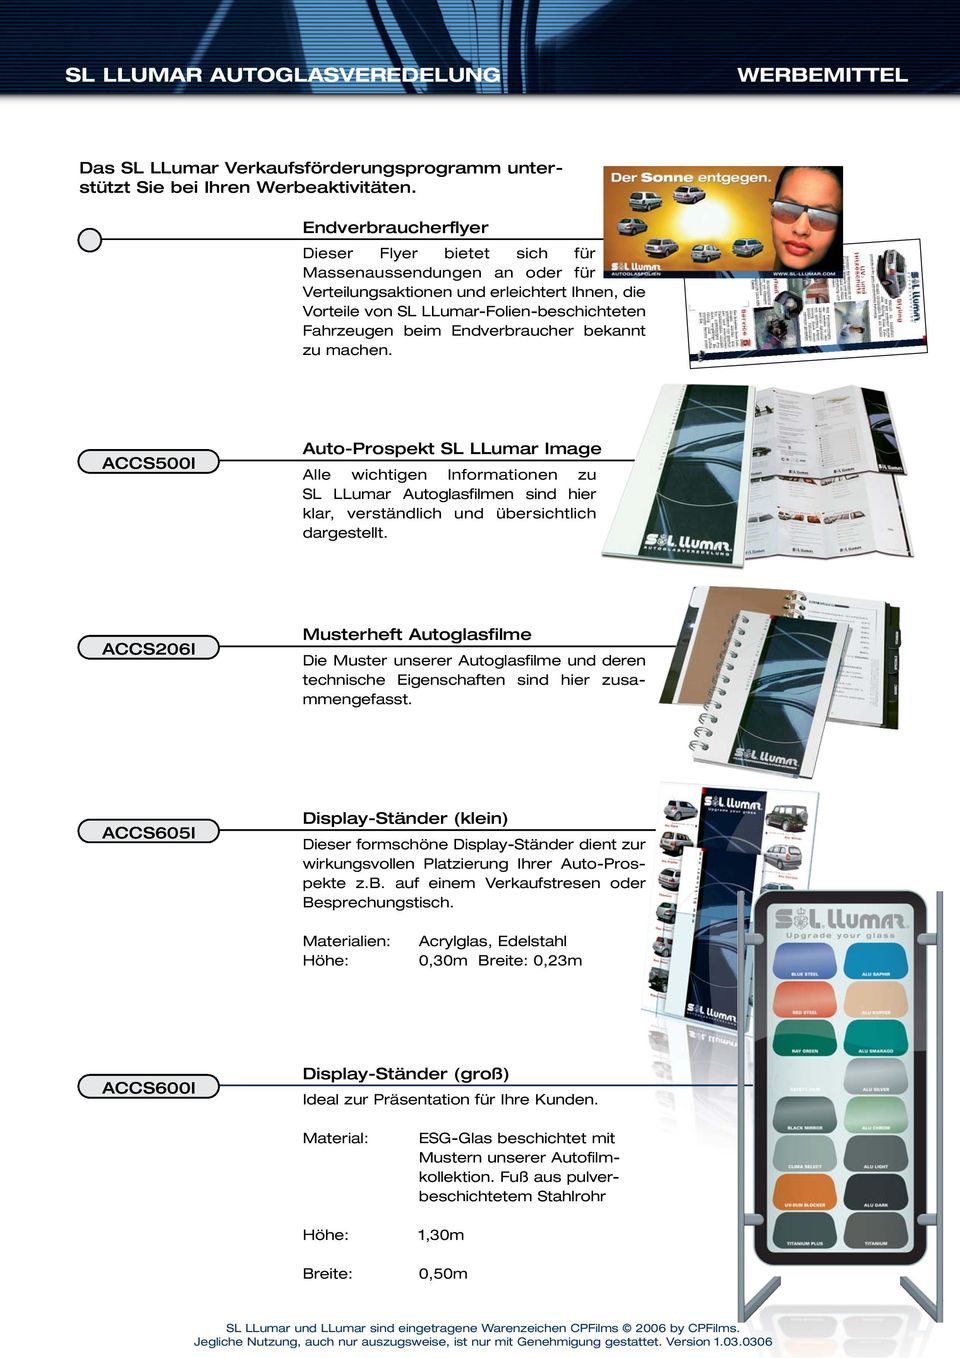 ACCS206I Musterheft Autoglasfilme Die Muster unserer Autoglasfilme und deren technische Eigenschaften sind hier zusammengefasst.